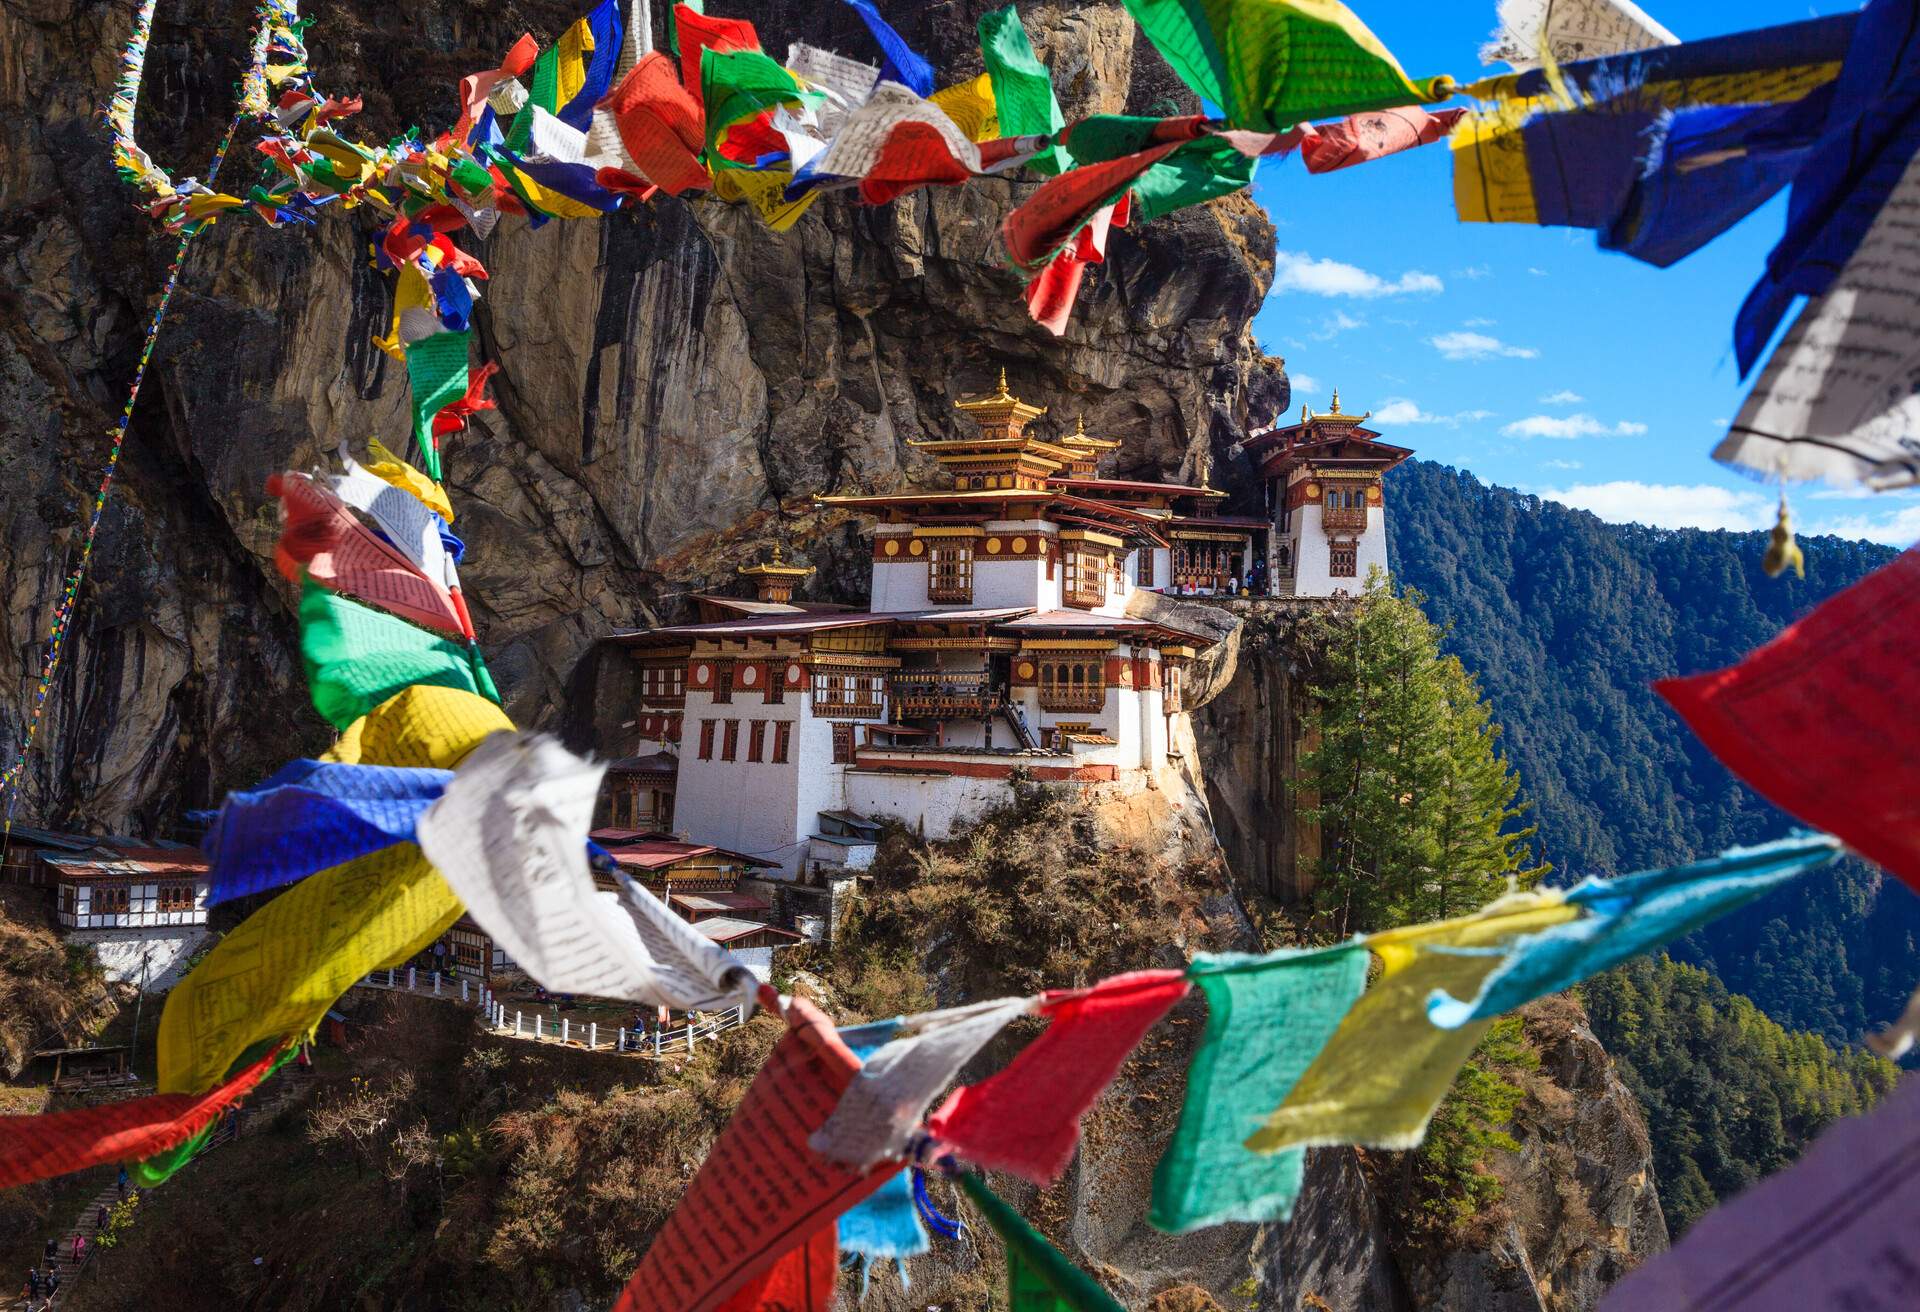 Taktshang Goemba or Tiger Nest Monastery, Bhutan